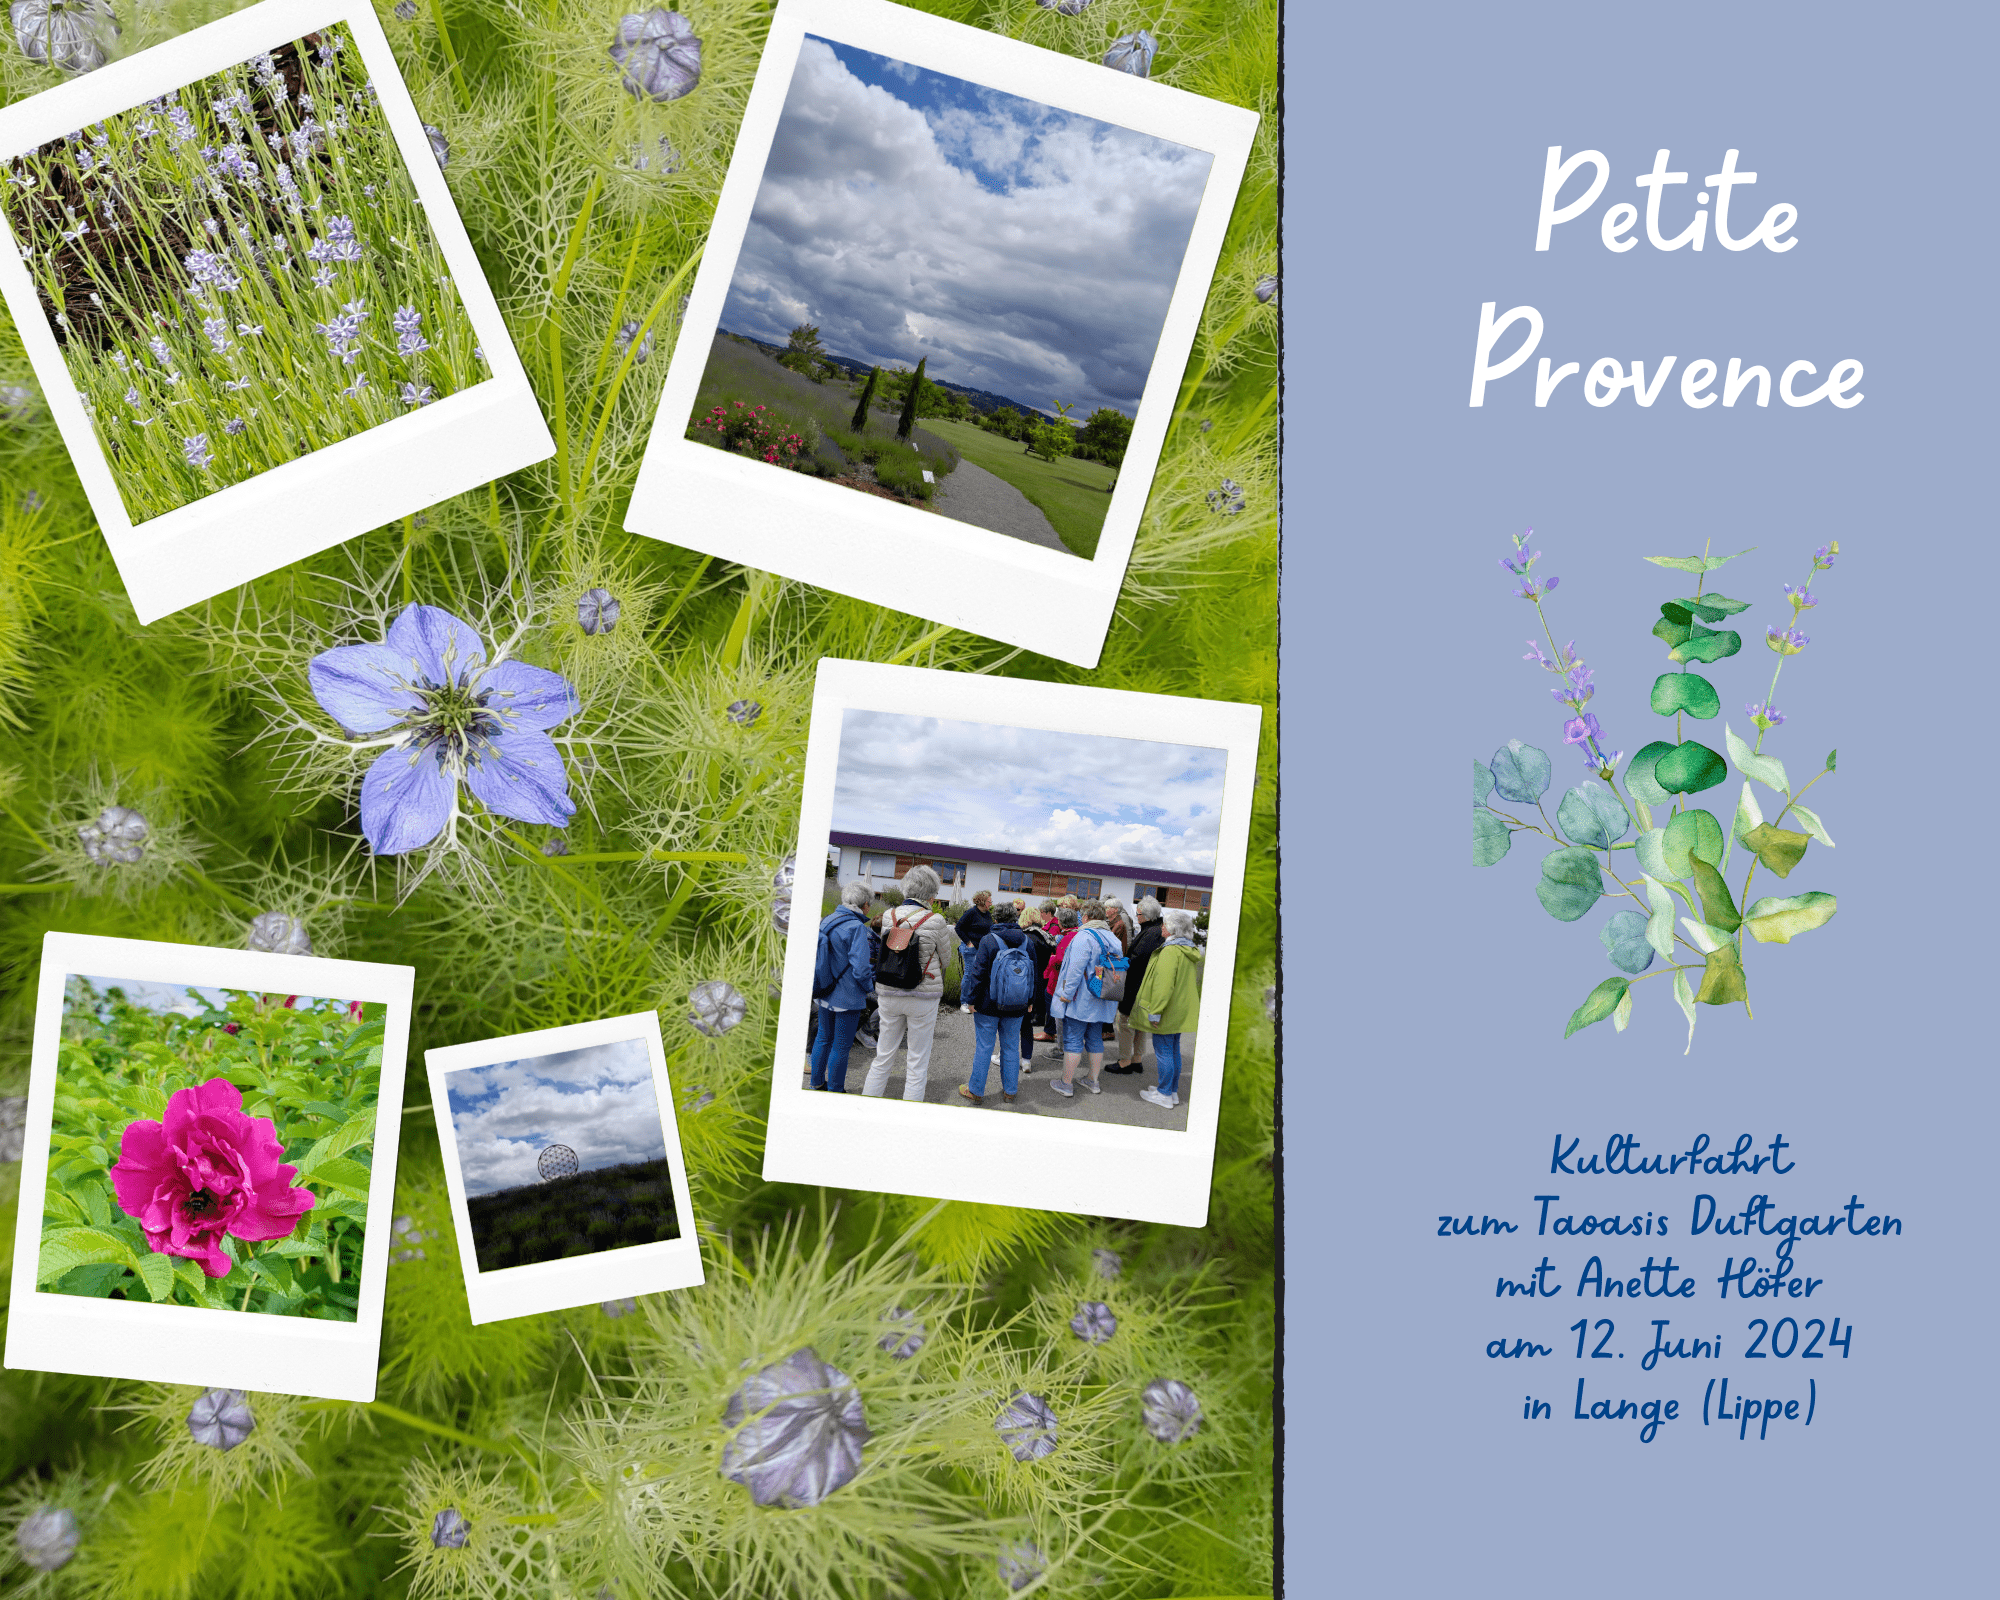 Mehr über den Artikel erfahren Impressionen von der Kulturfahrt mit Anette: Petite Provence – Taoasis Duftgarten